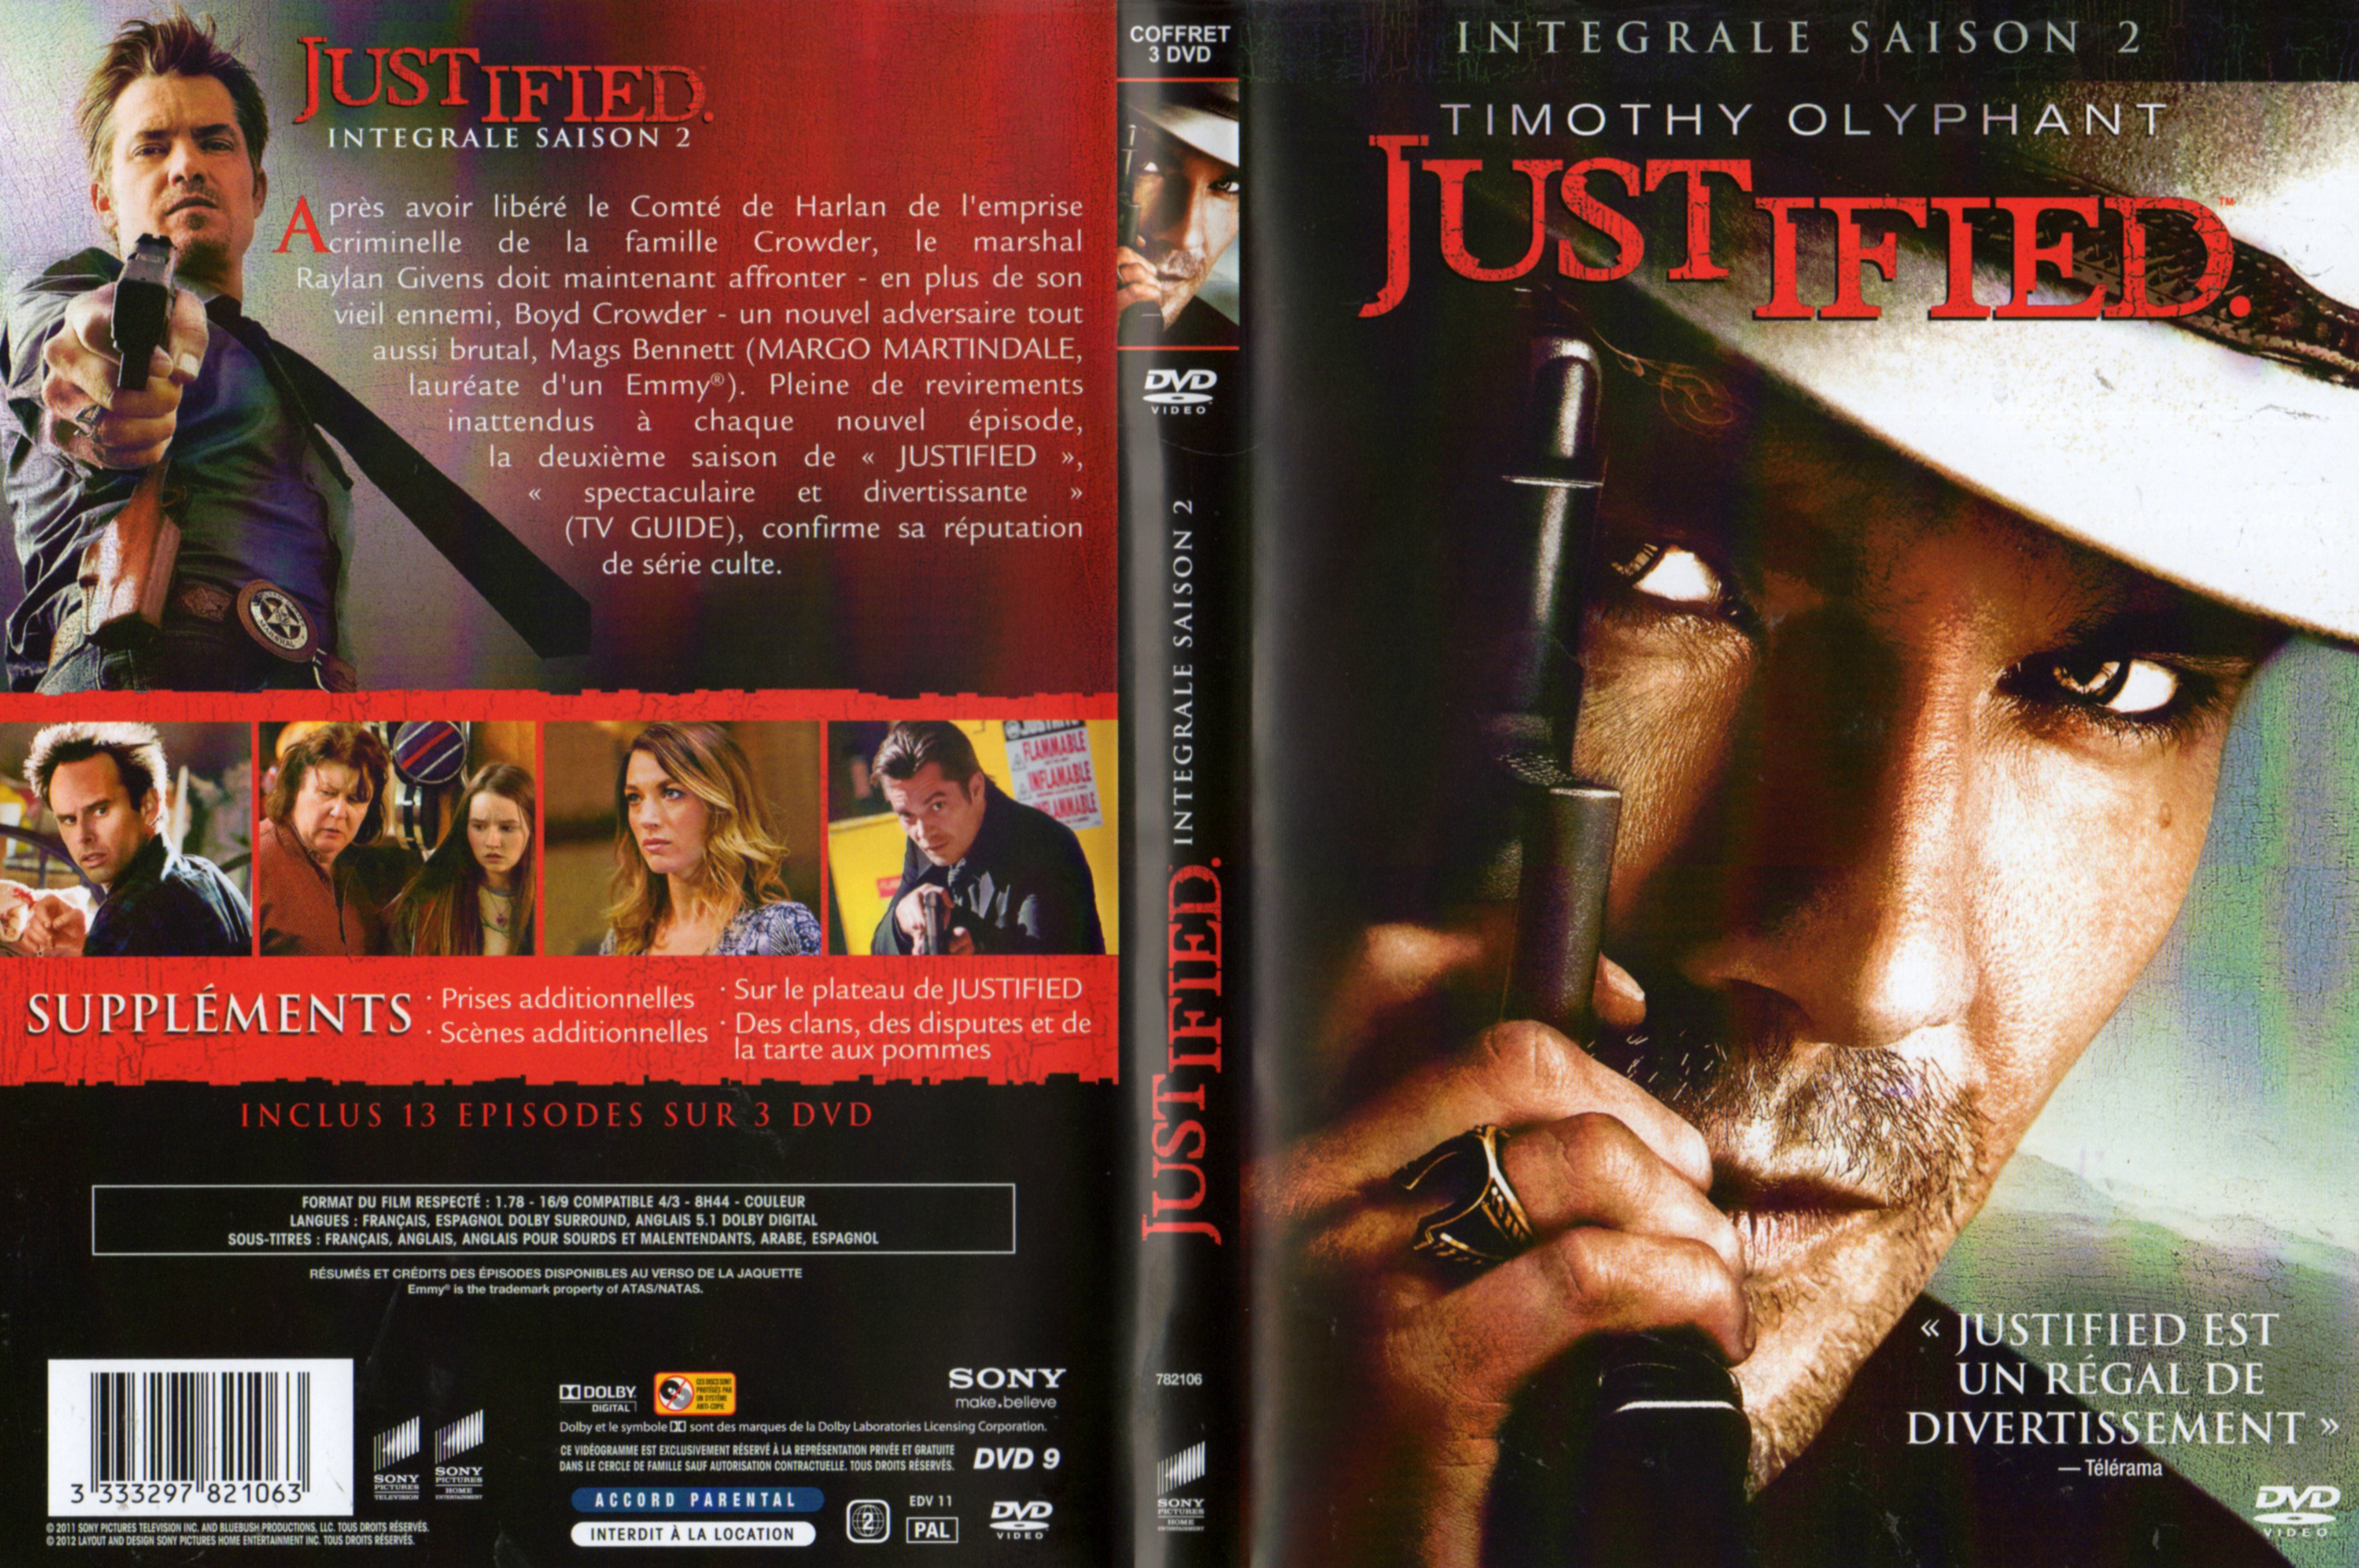 Jaquette DVD Justified Saison 2 COFFRET